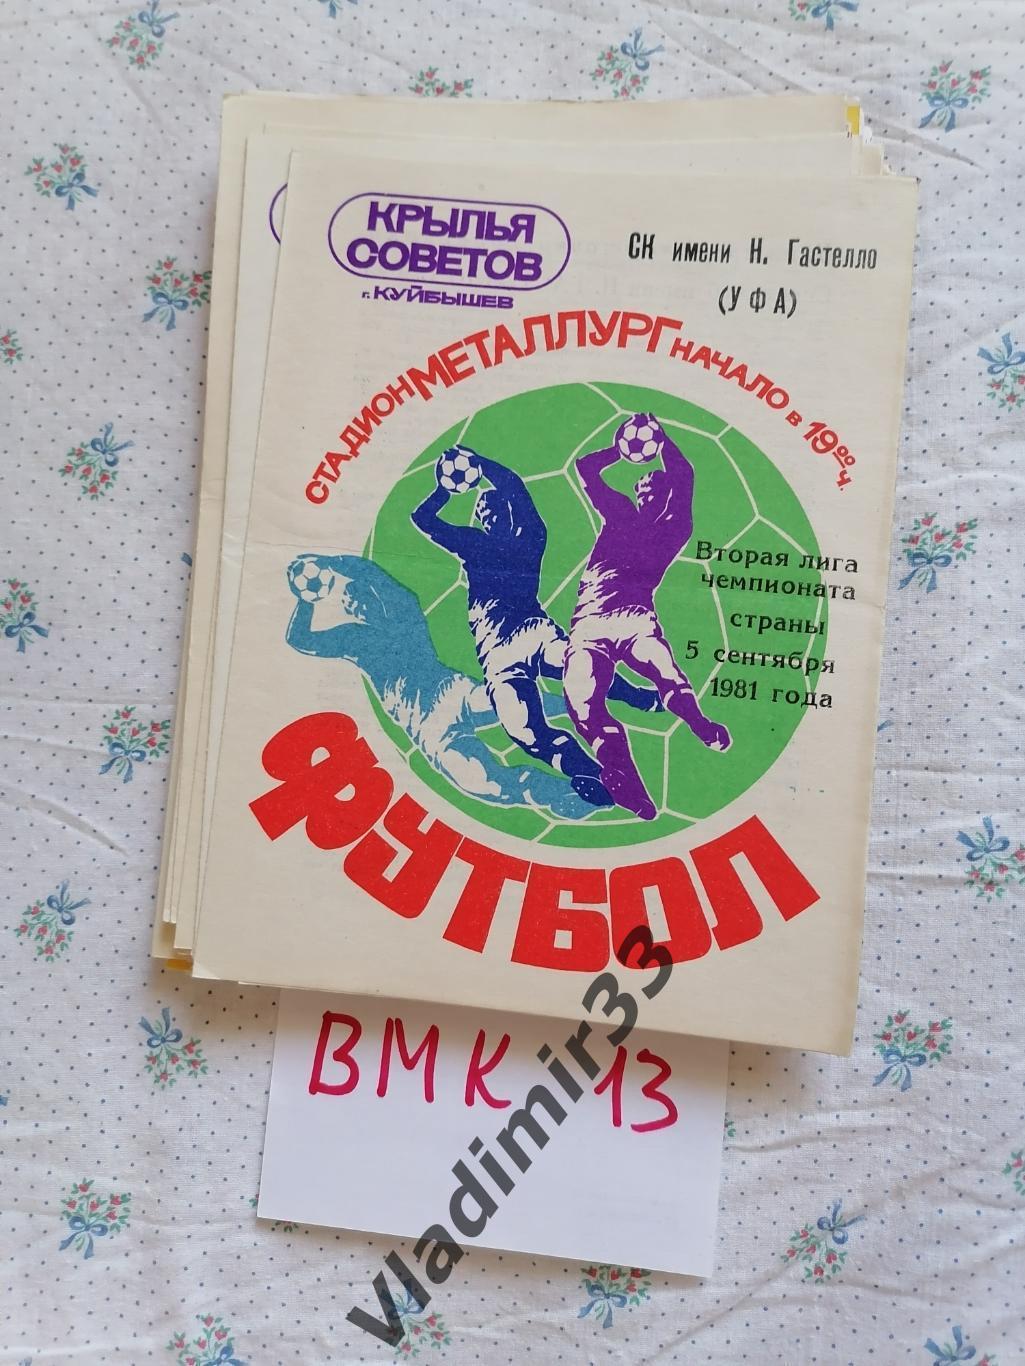 Крылья Советов Куйбышев - Гастелло Уфа 1981